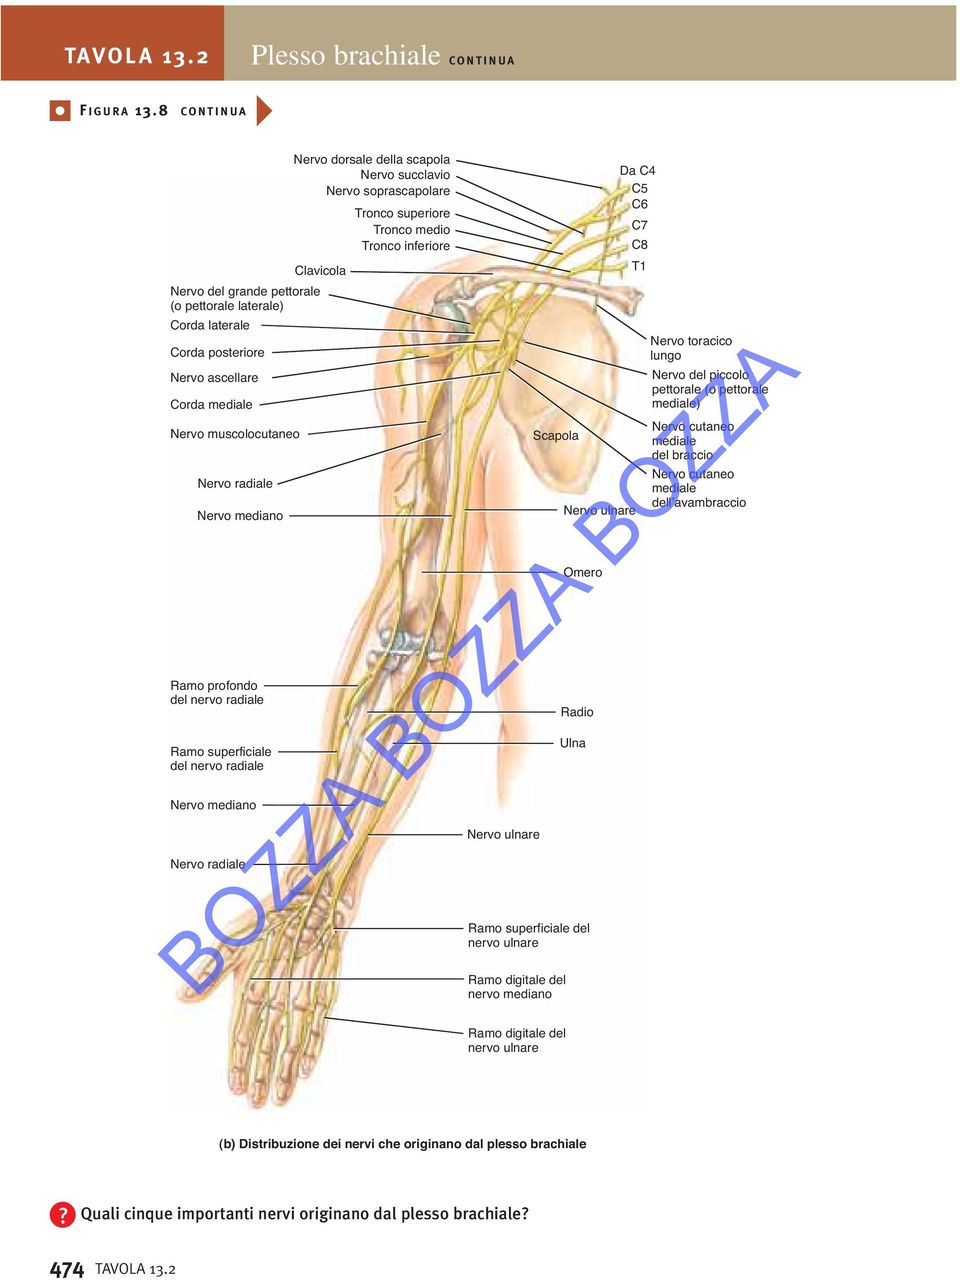 superficiale del nervo radiale mediano radiale dorsale della scapola succlavio soprascapolare Tronco superiore Tronco medio Tronco inferiore ulnare Scapola Ramo digitale del nervo mediano ulnare